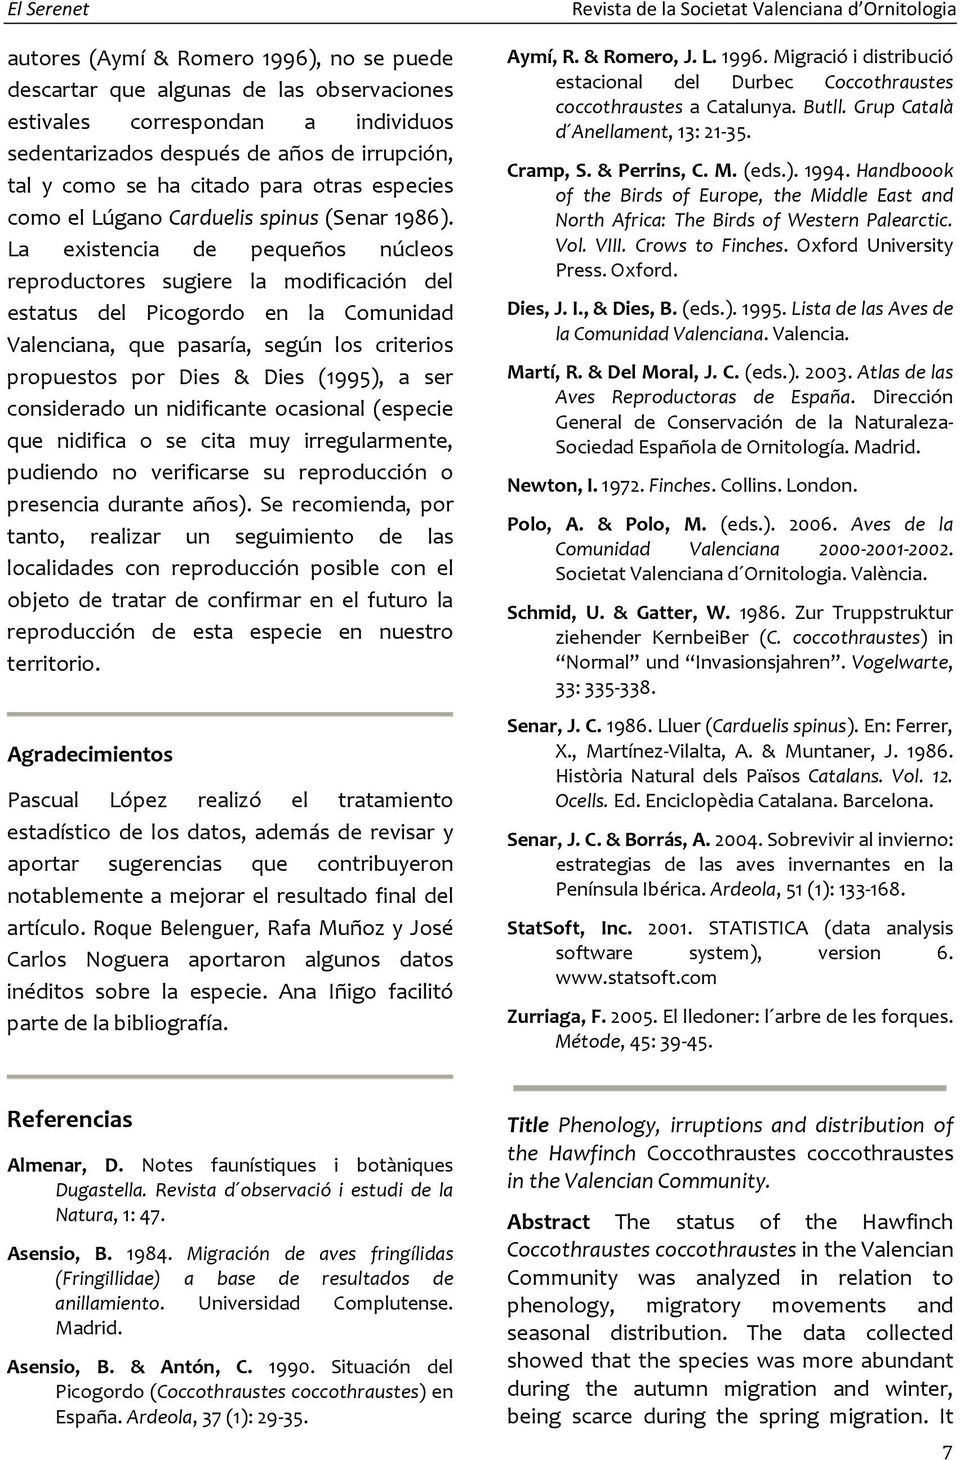 La existencia de pequeños núcleos reproductores sugiere la modificación del estatus del Picogordo en la Comunidad Valenciana, que pasaría, según los criterios propuestos por Dies & Dies (1995), a ser